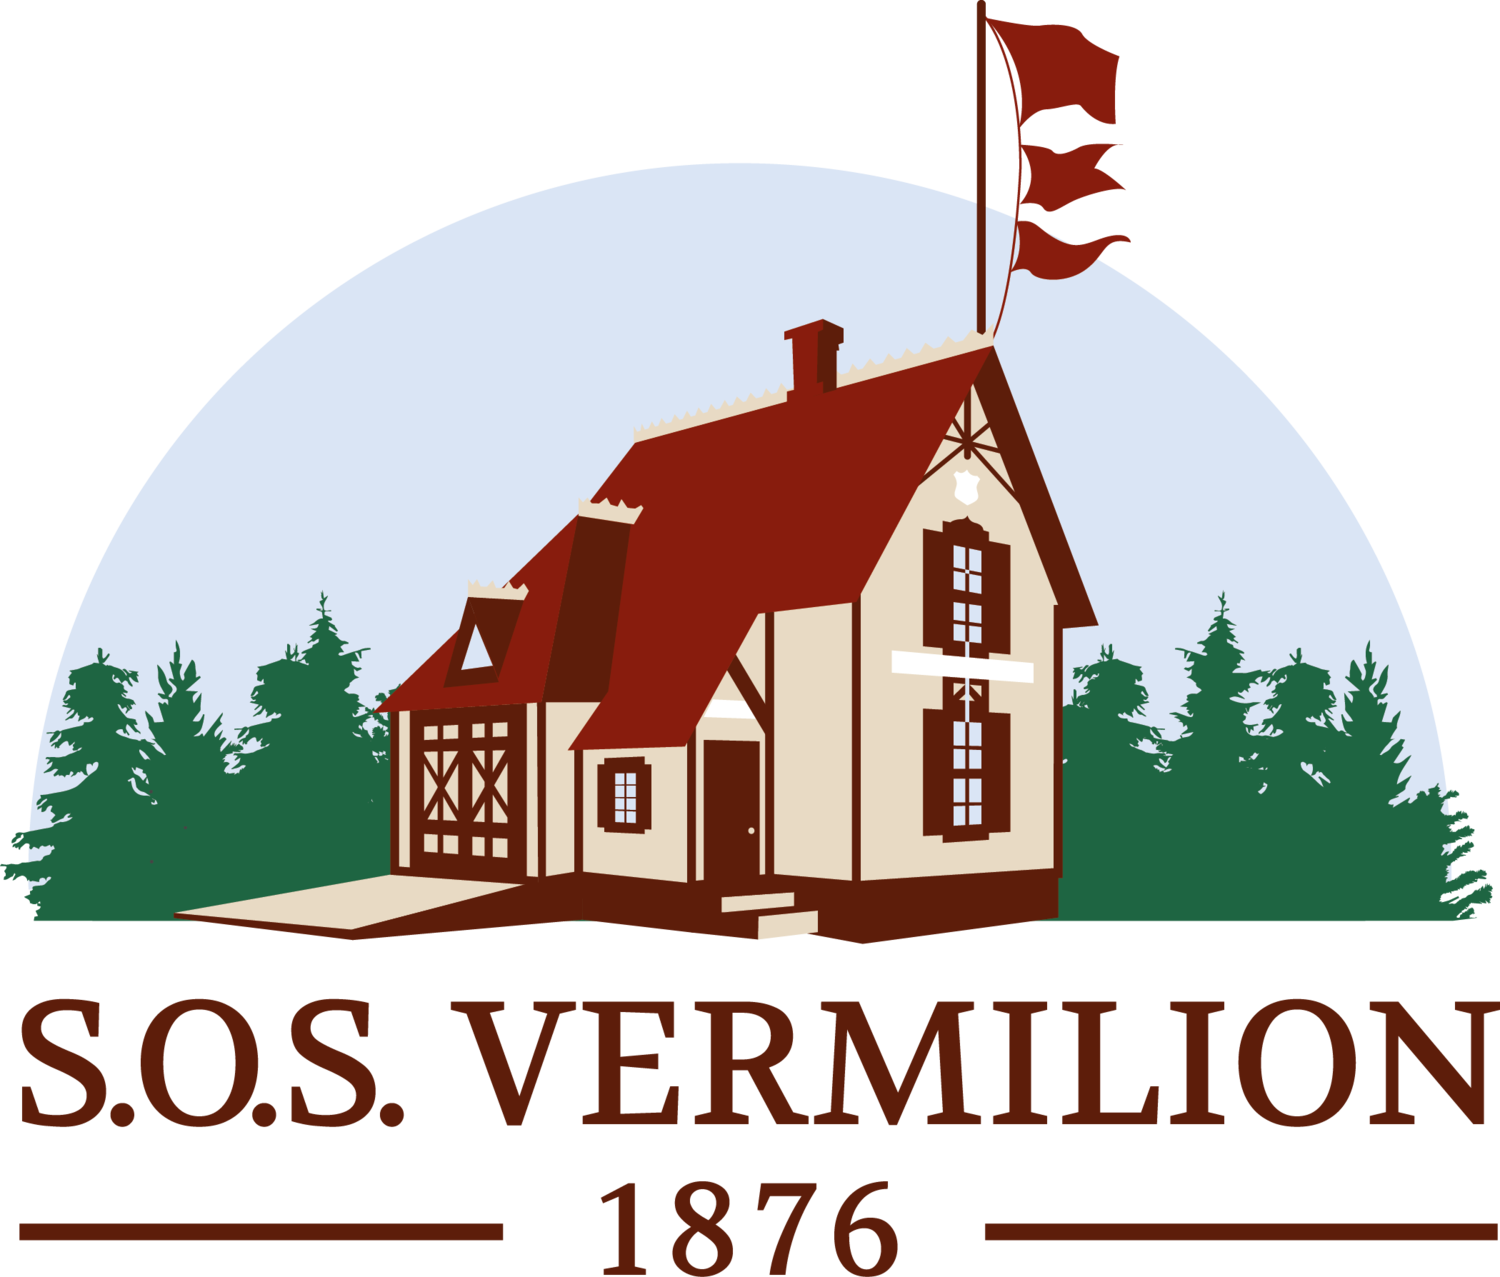 S.O.S. Vermilion